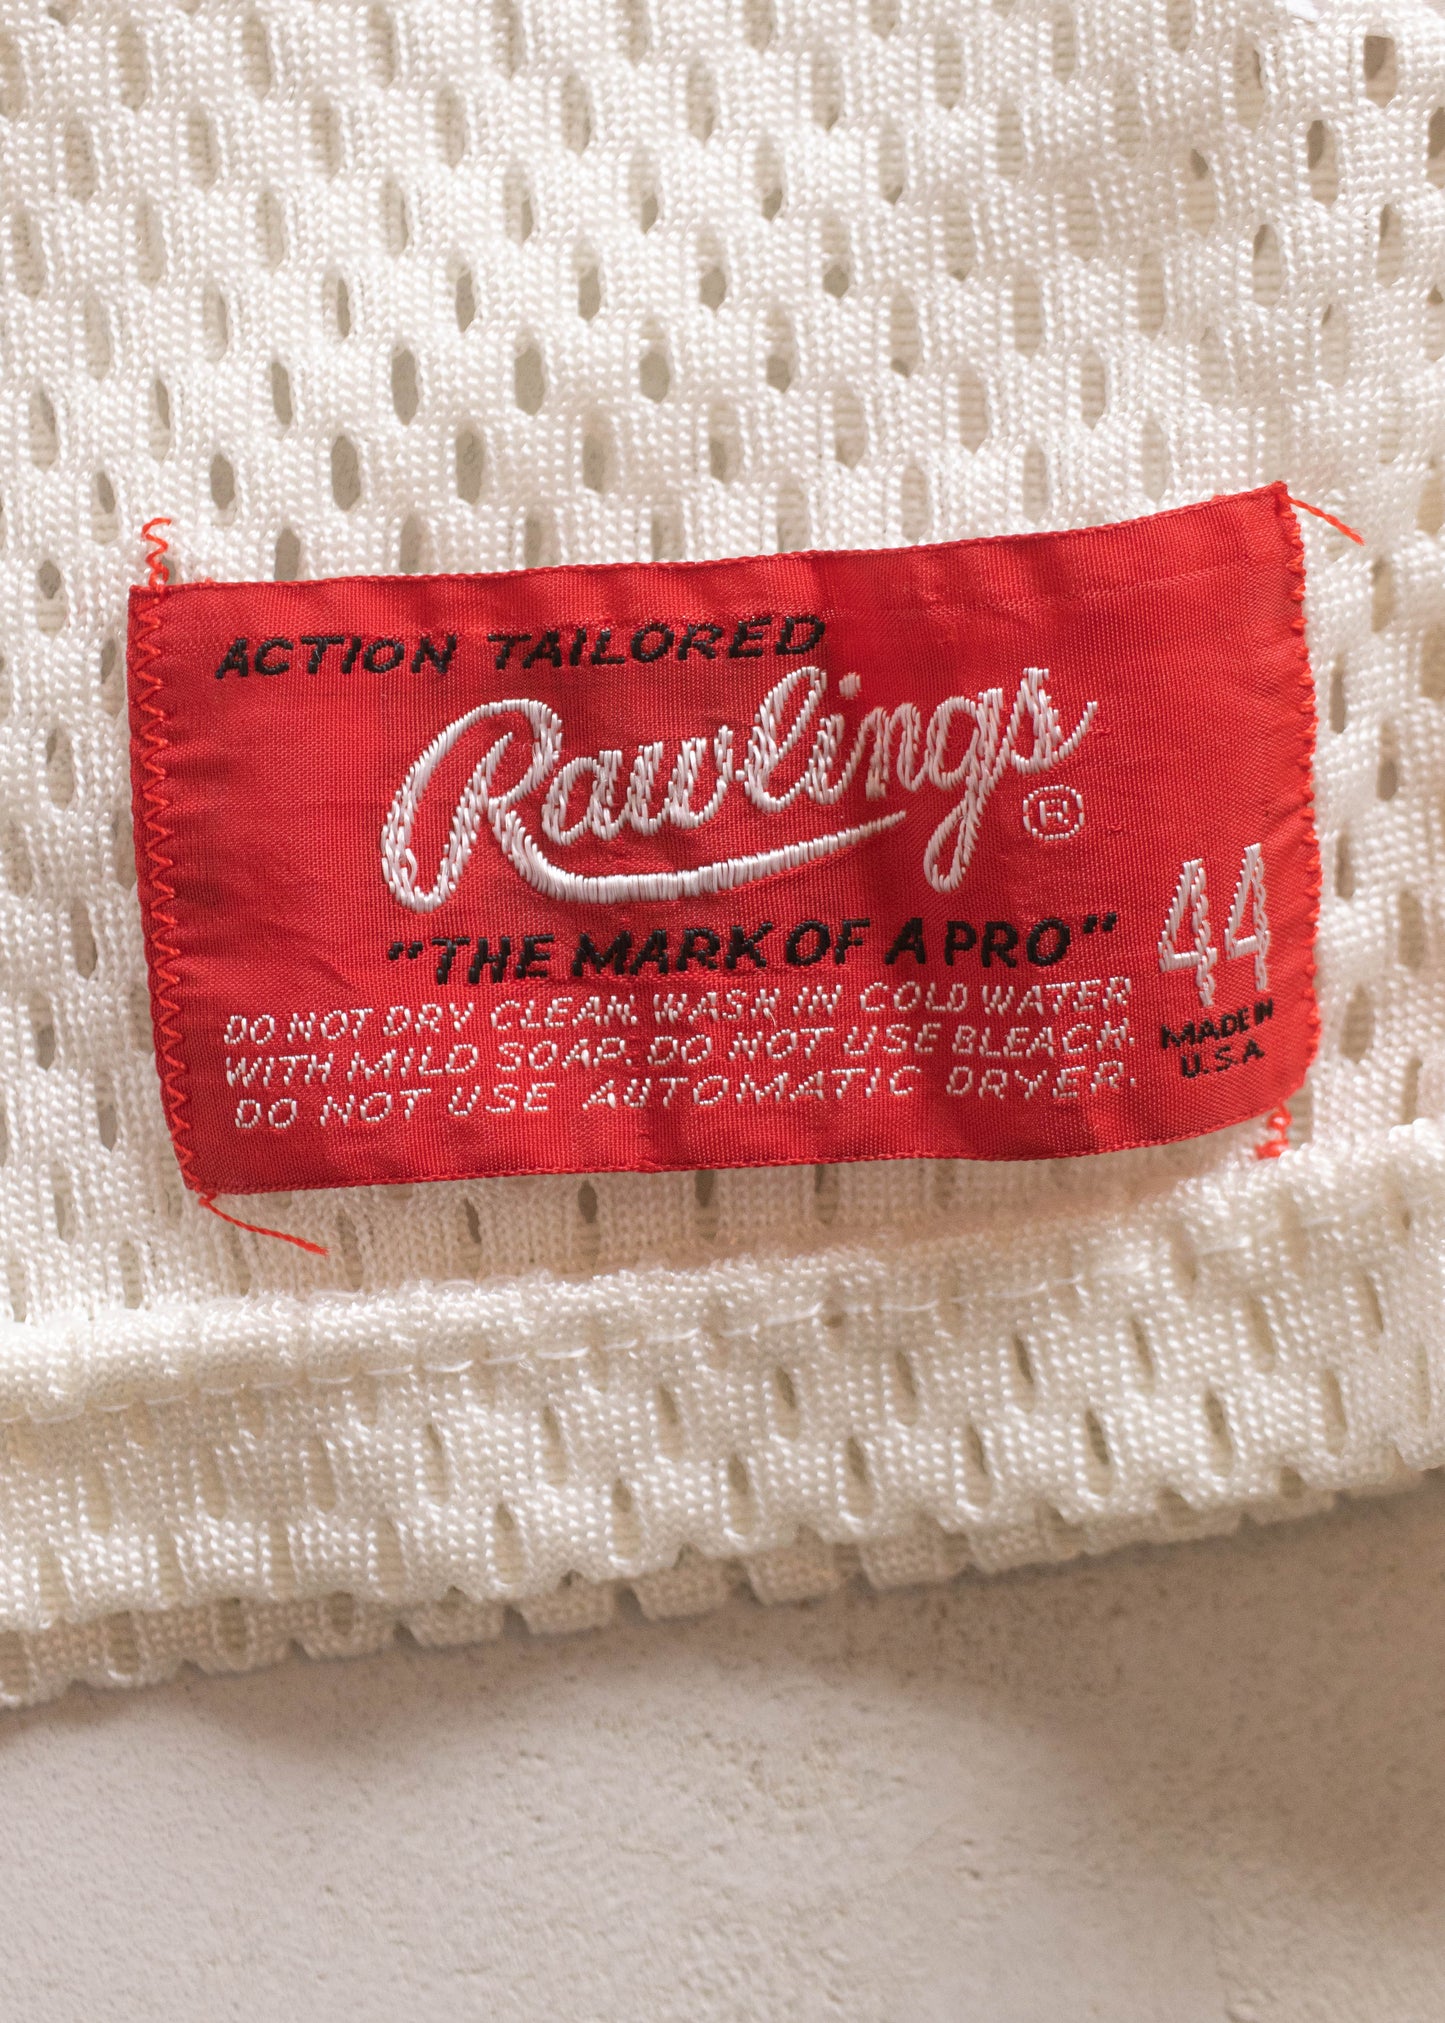 Vintage 1984 Rawlings Sugar Bowl Mesh Sport Jersey Size L/XL